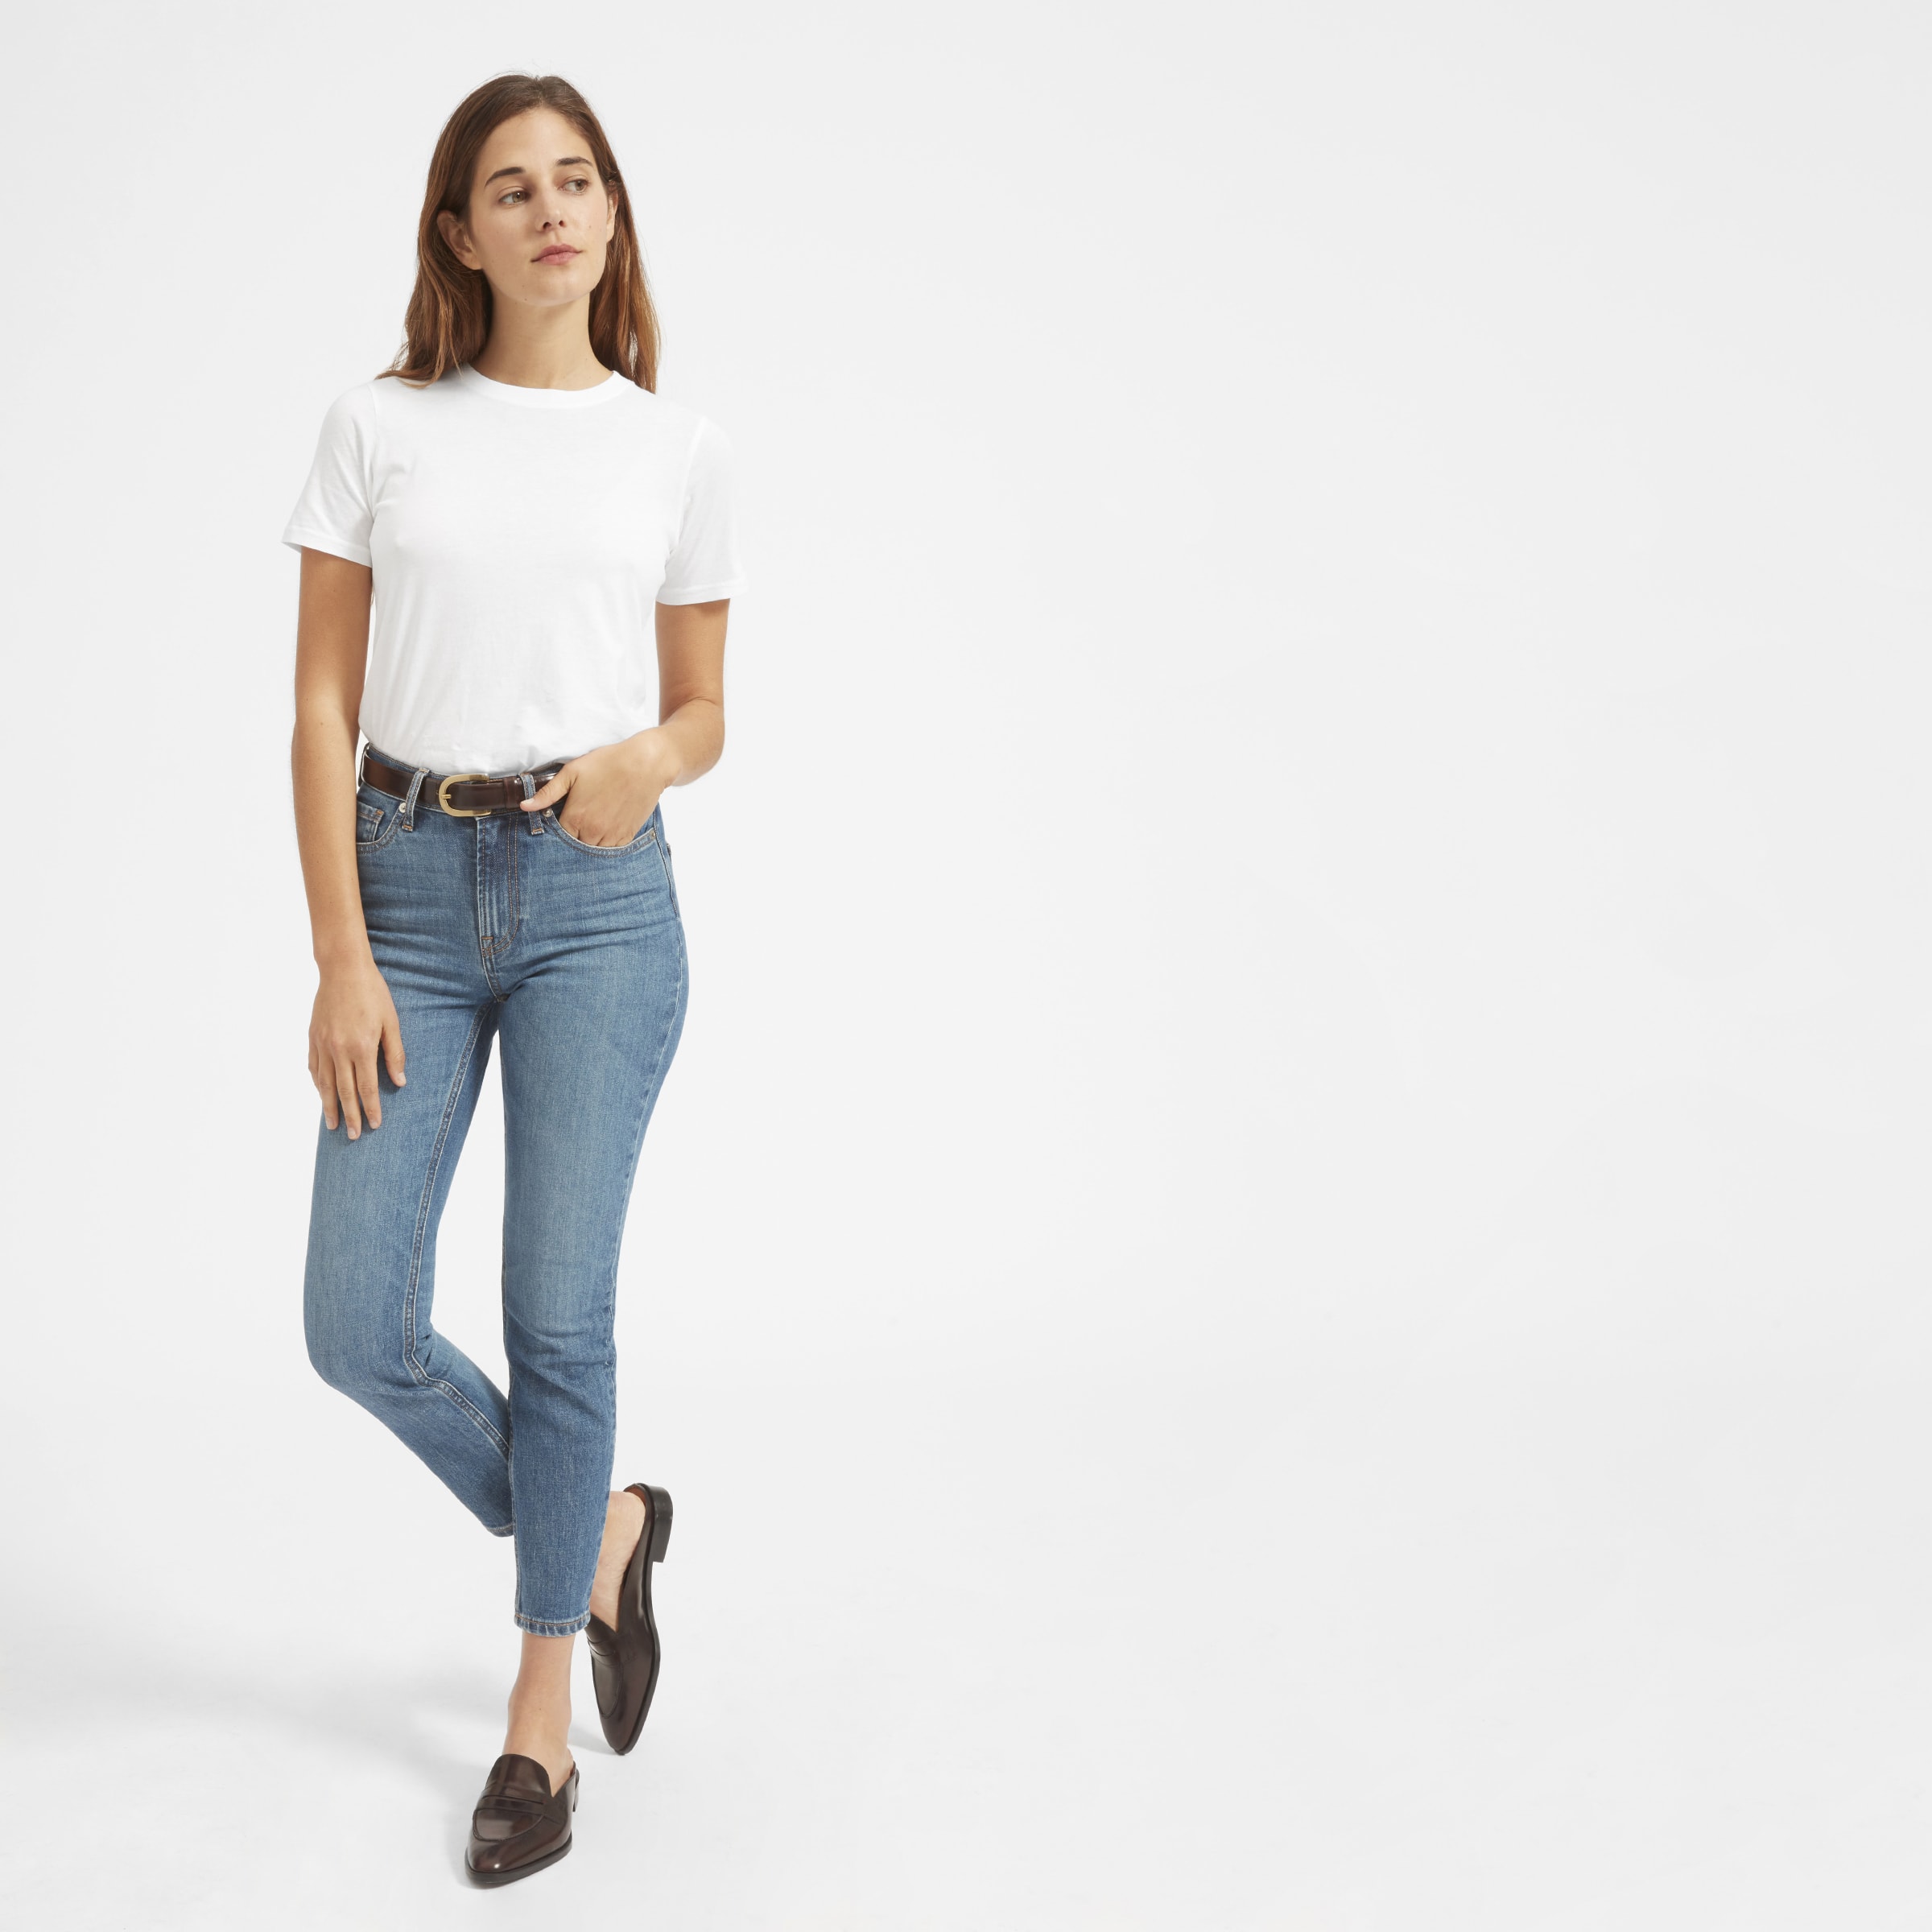 Девушка на белом фоне в белой футболке, джинсах и кроссовках